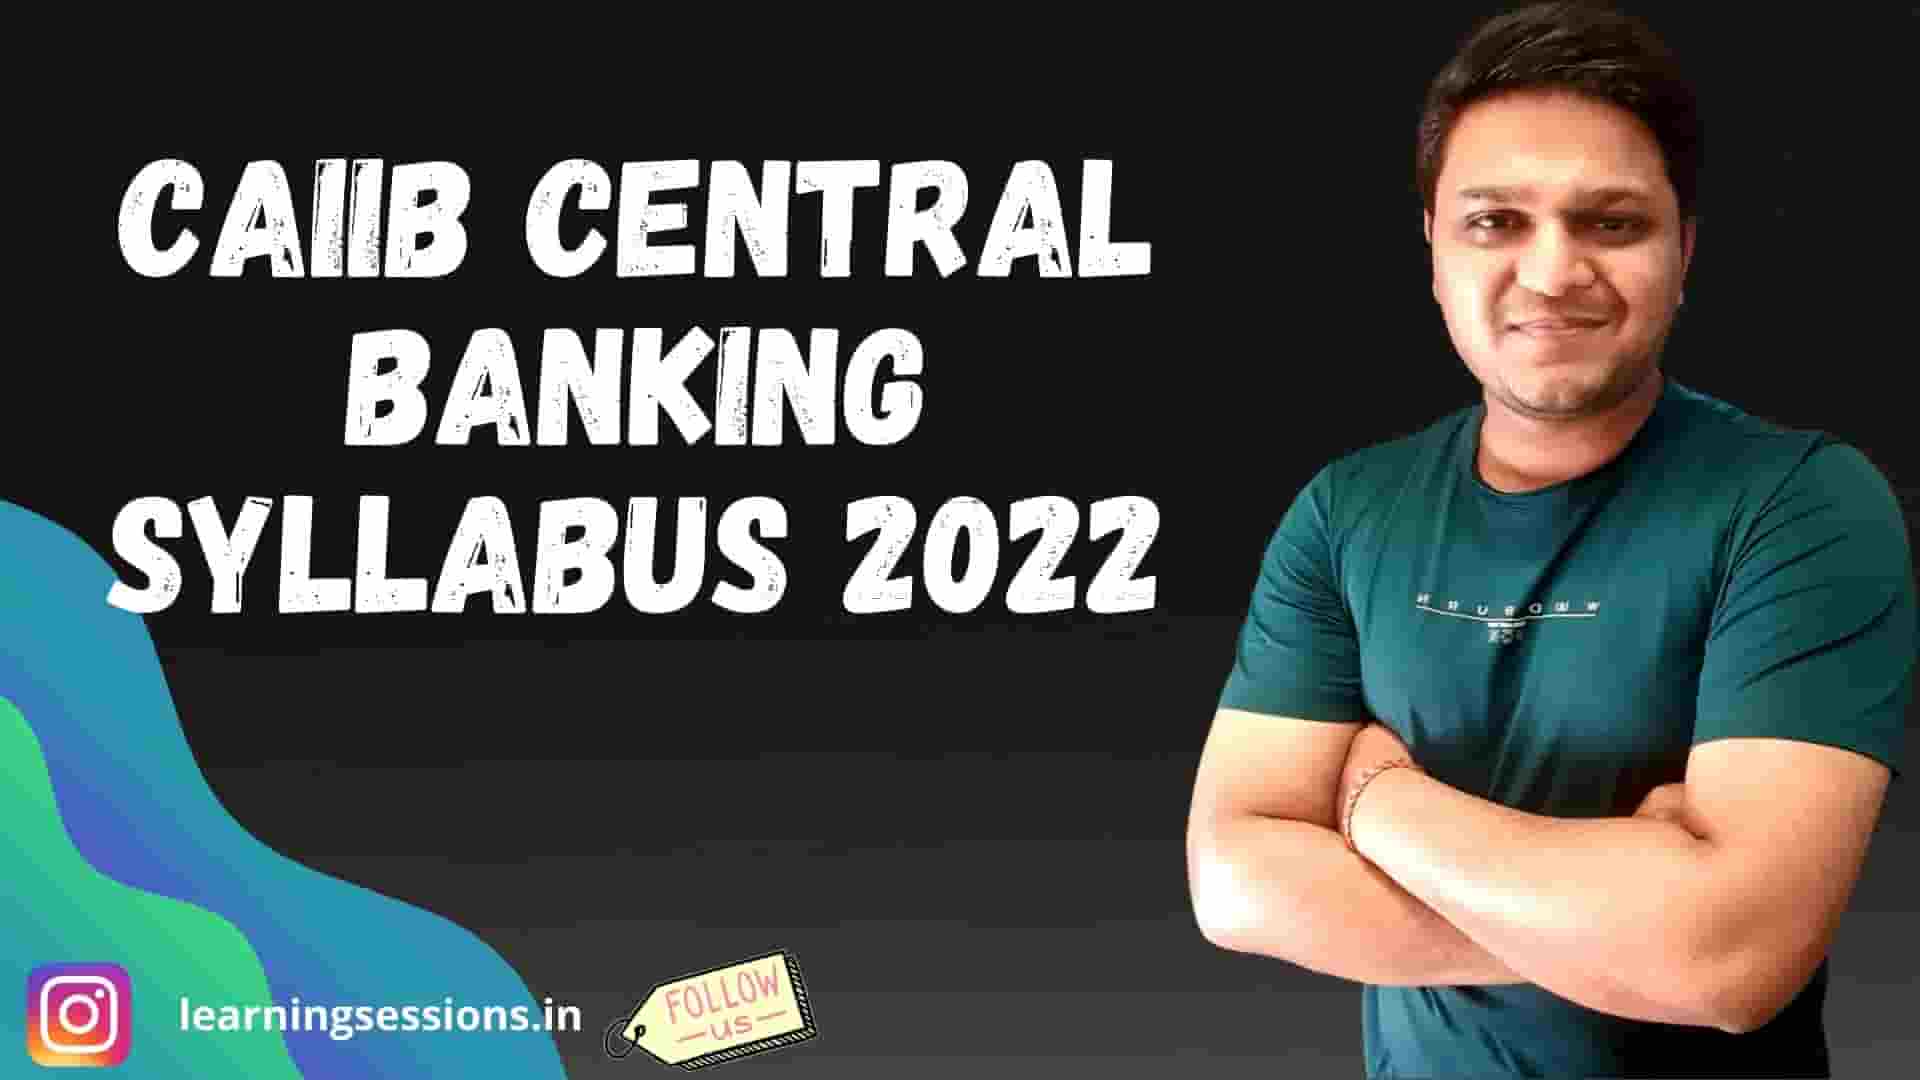 CAIIB CENTRAL BANKING SYLLABUS 2022